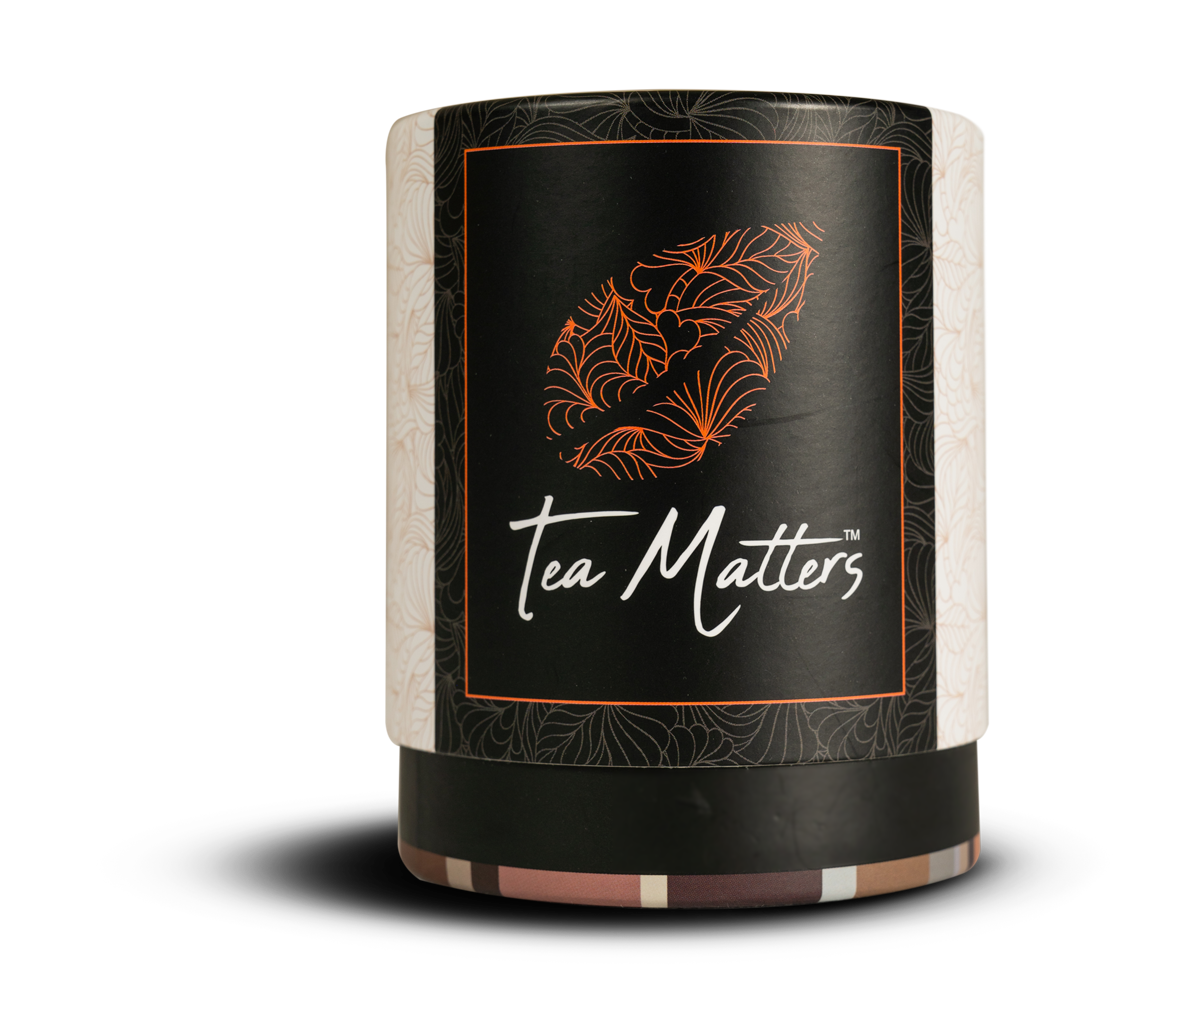 Tea Matter Loose Leaf Tea canister